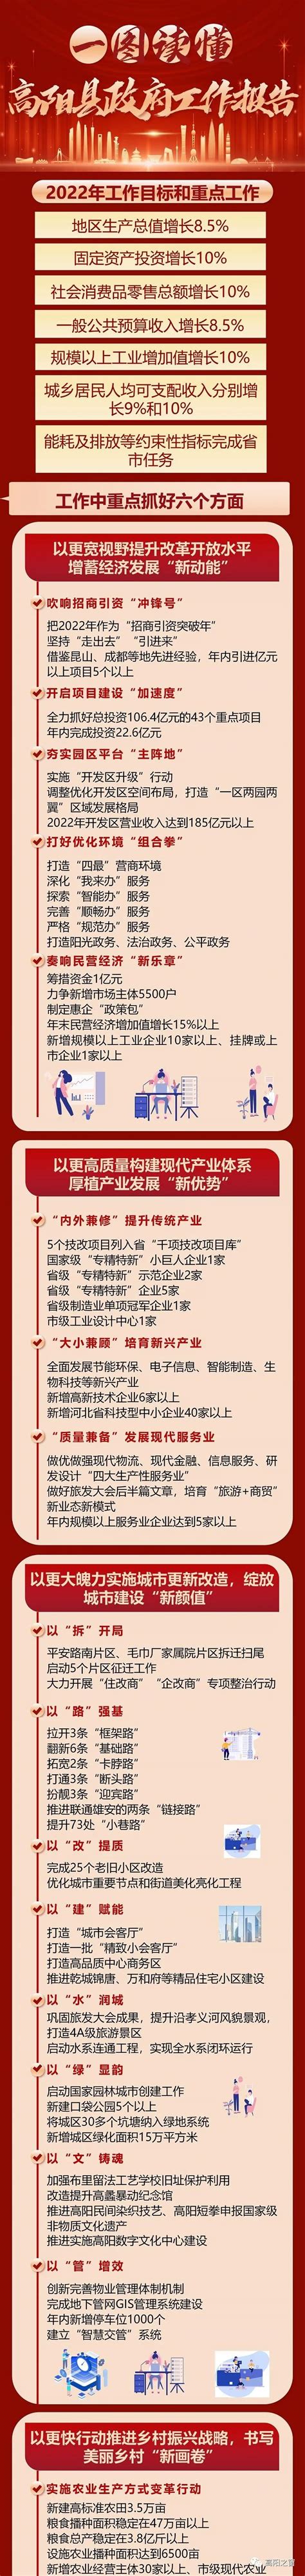 高阳县乾城锦唐南区、北区项目修建性详细规划公示--高阳县人民政府网站